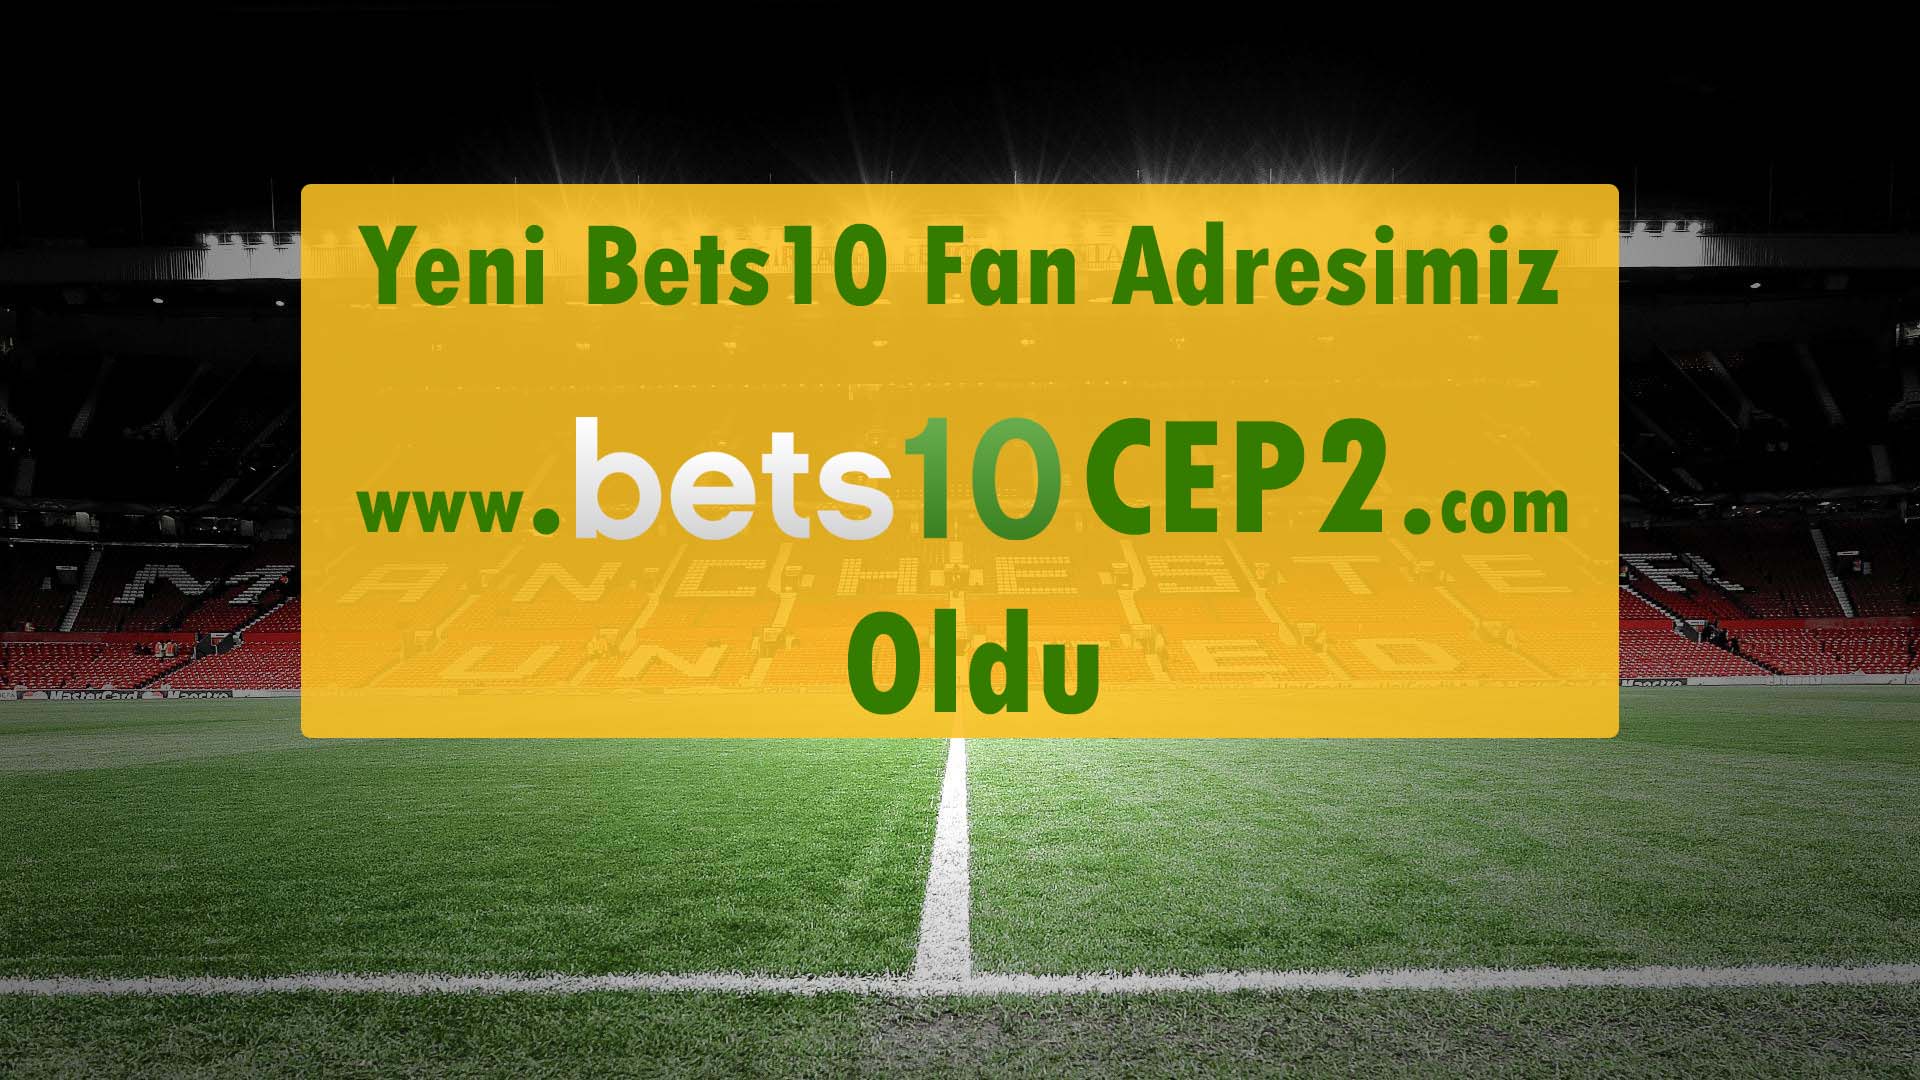 Yeni Bets10 Fan Adresimiz www.bets10bets.com Oldu